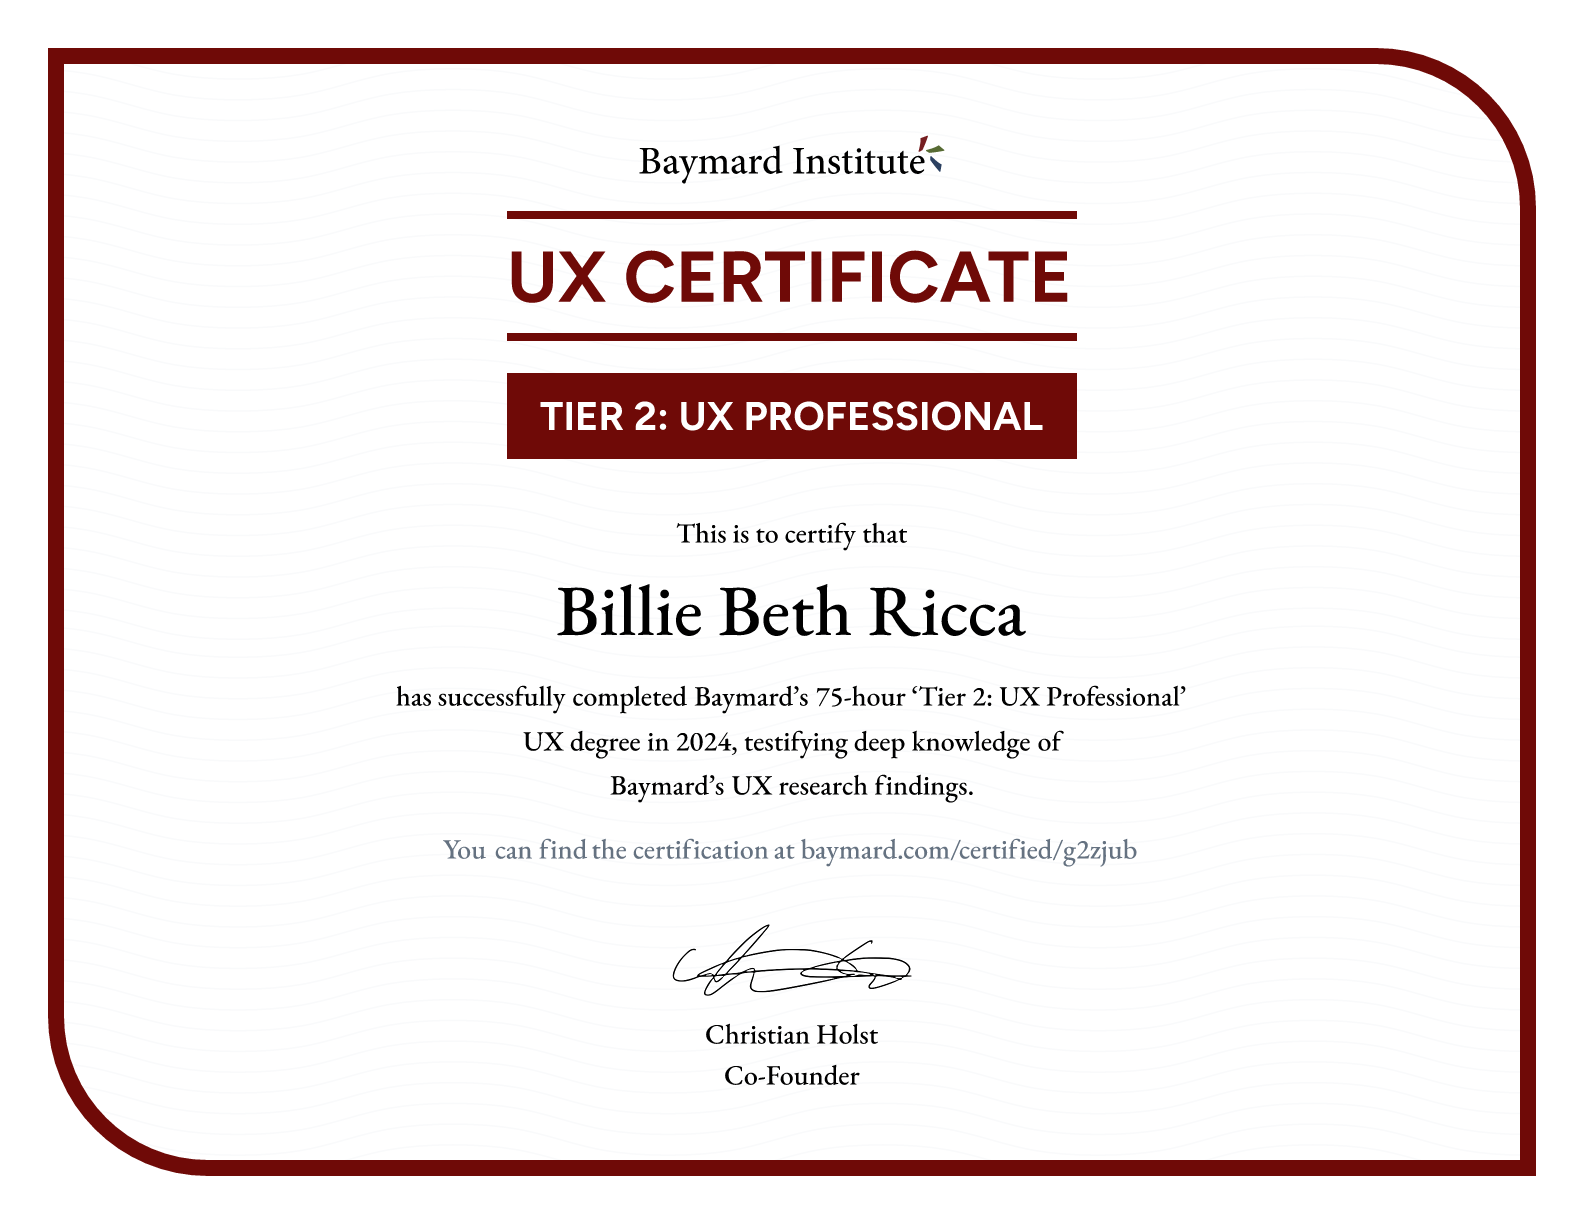 Billie Beth Ricca’s certificate